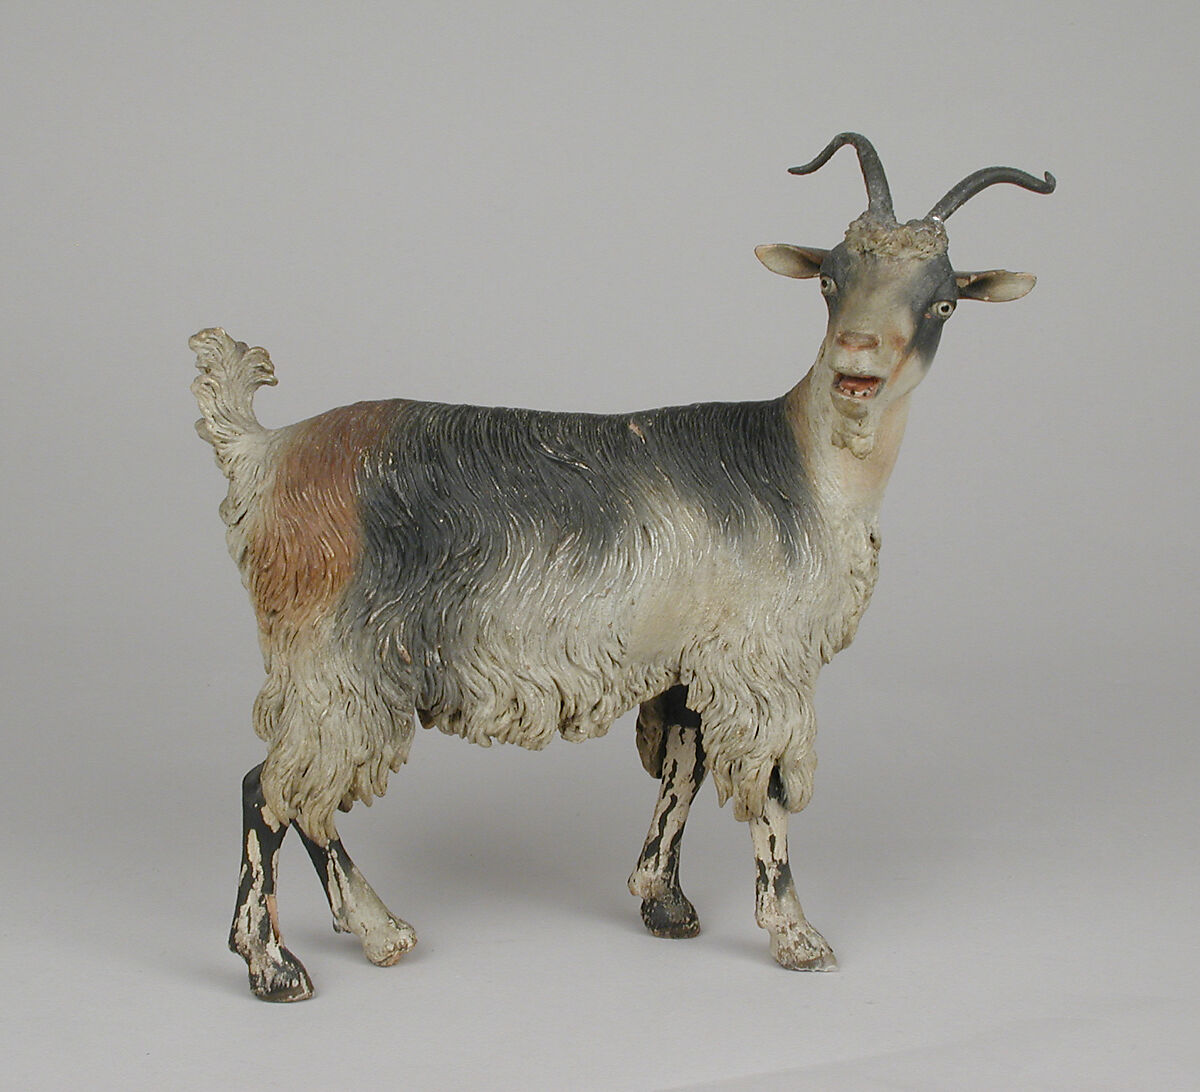 Female adult goat, Polychromed terracotta body, wooden legs, metal horns, Italian, Naples